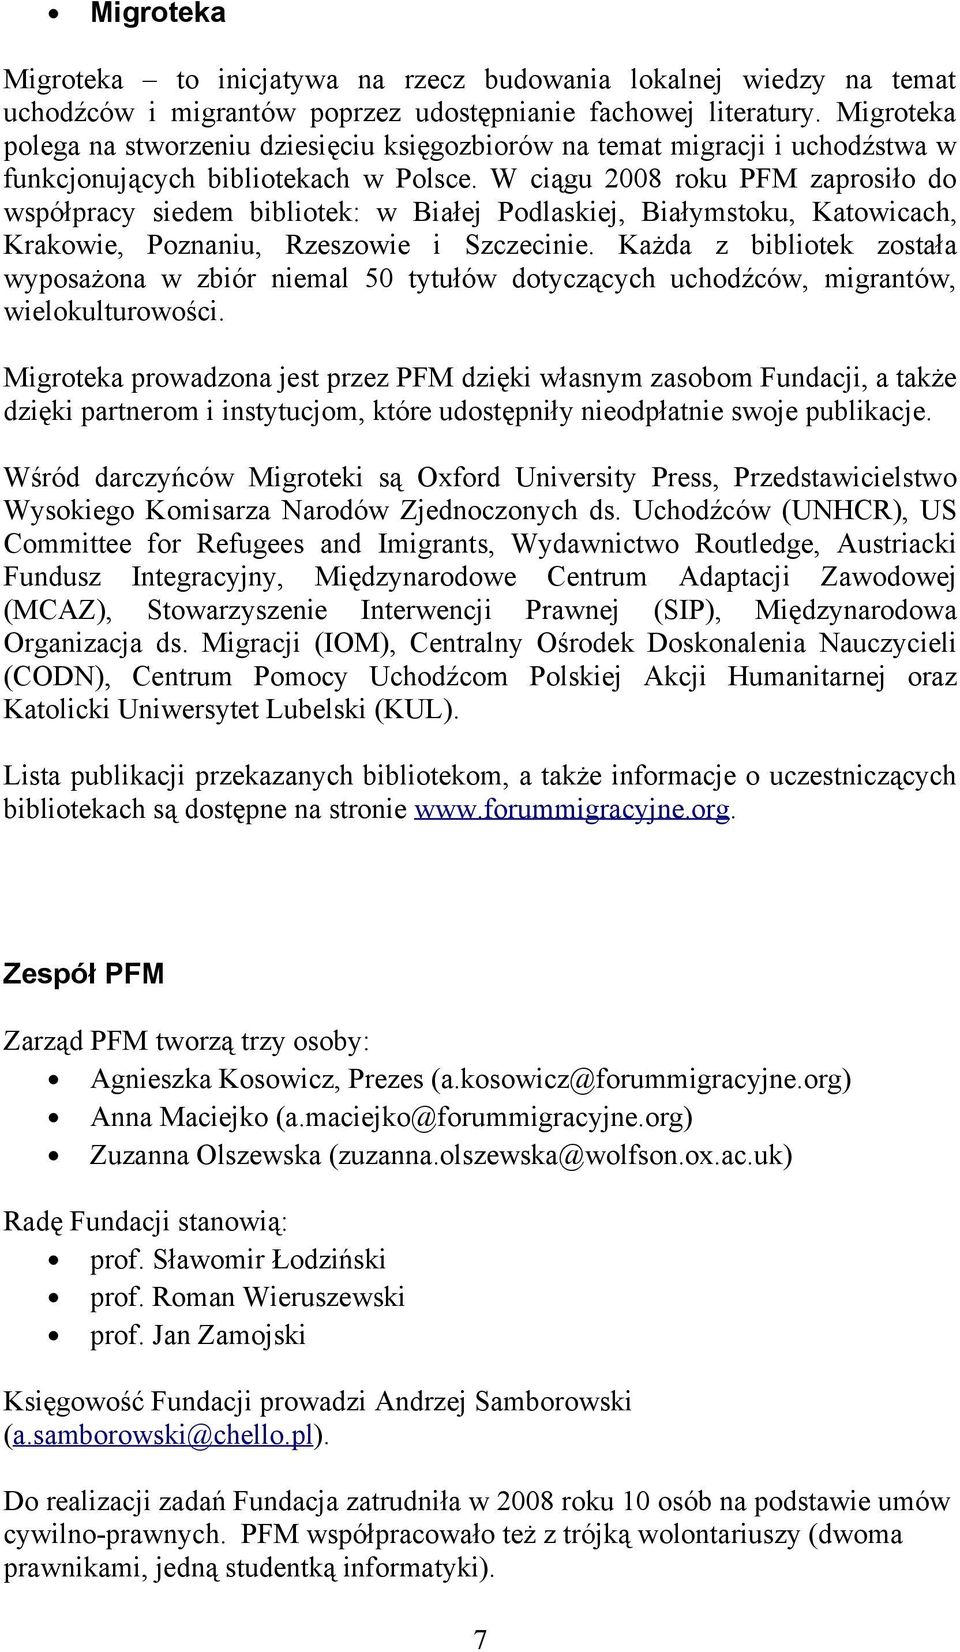 W ciągu 2008 roku PFM zaprosiło do współpracy siedem bibliotek: w Białej Podlaskiej, Białymstoku, Katowicach, Krakowie, Poznaniu, Rzeszowie i Szczecinie.